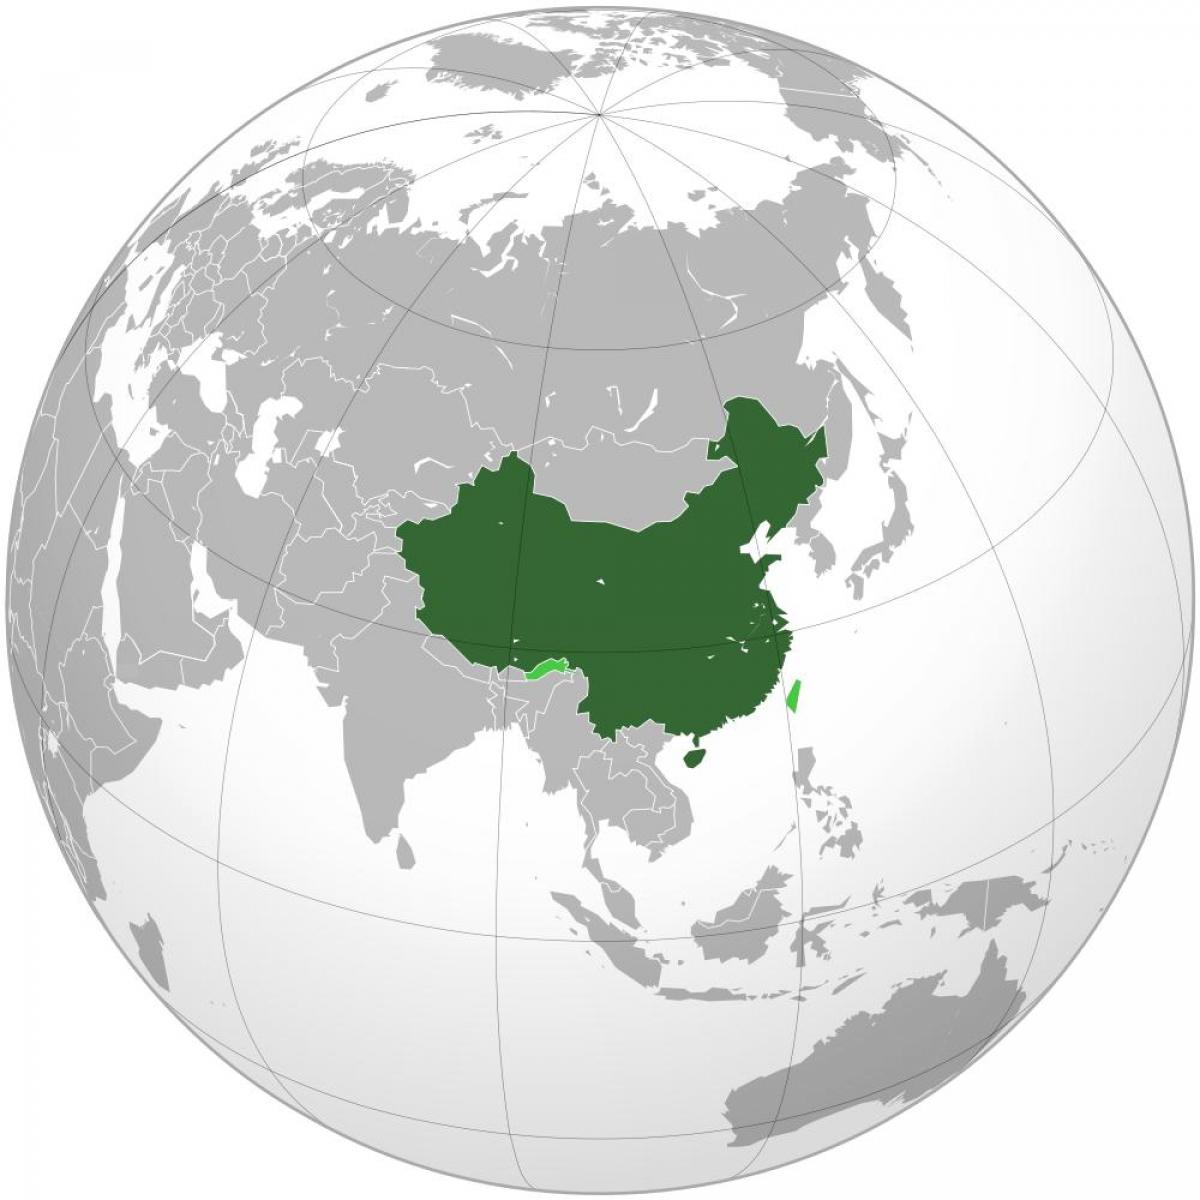 Kina kortet verden